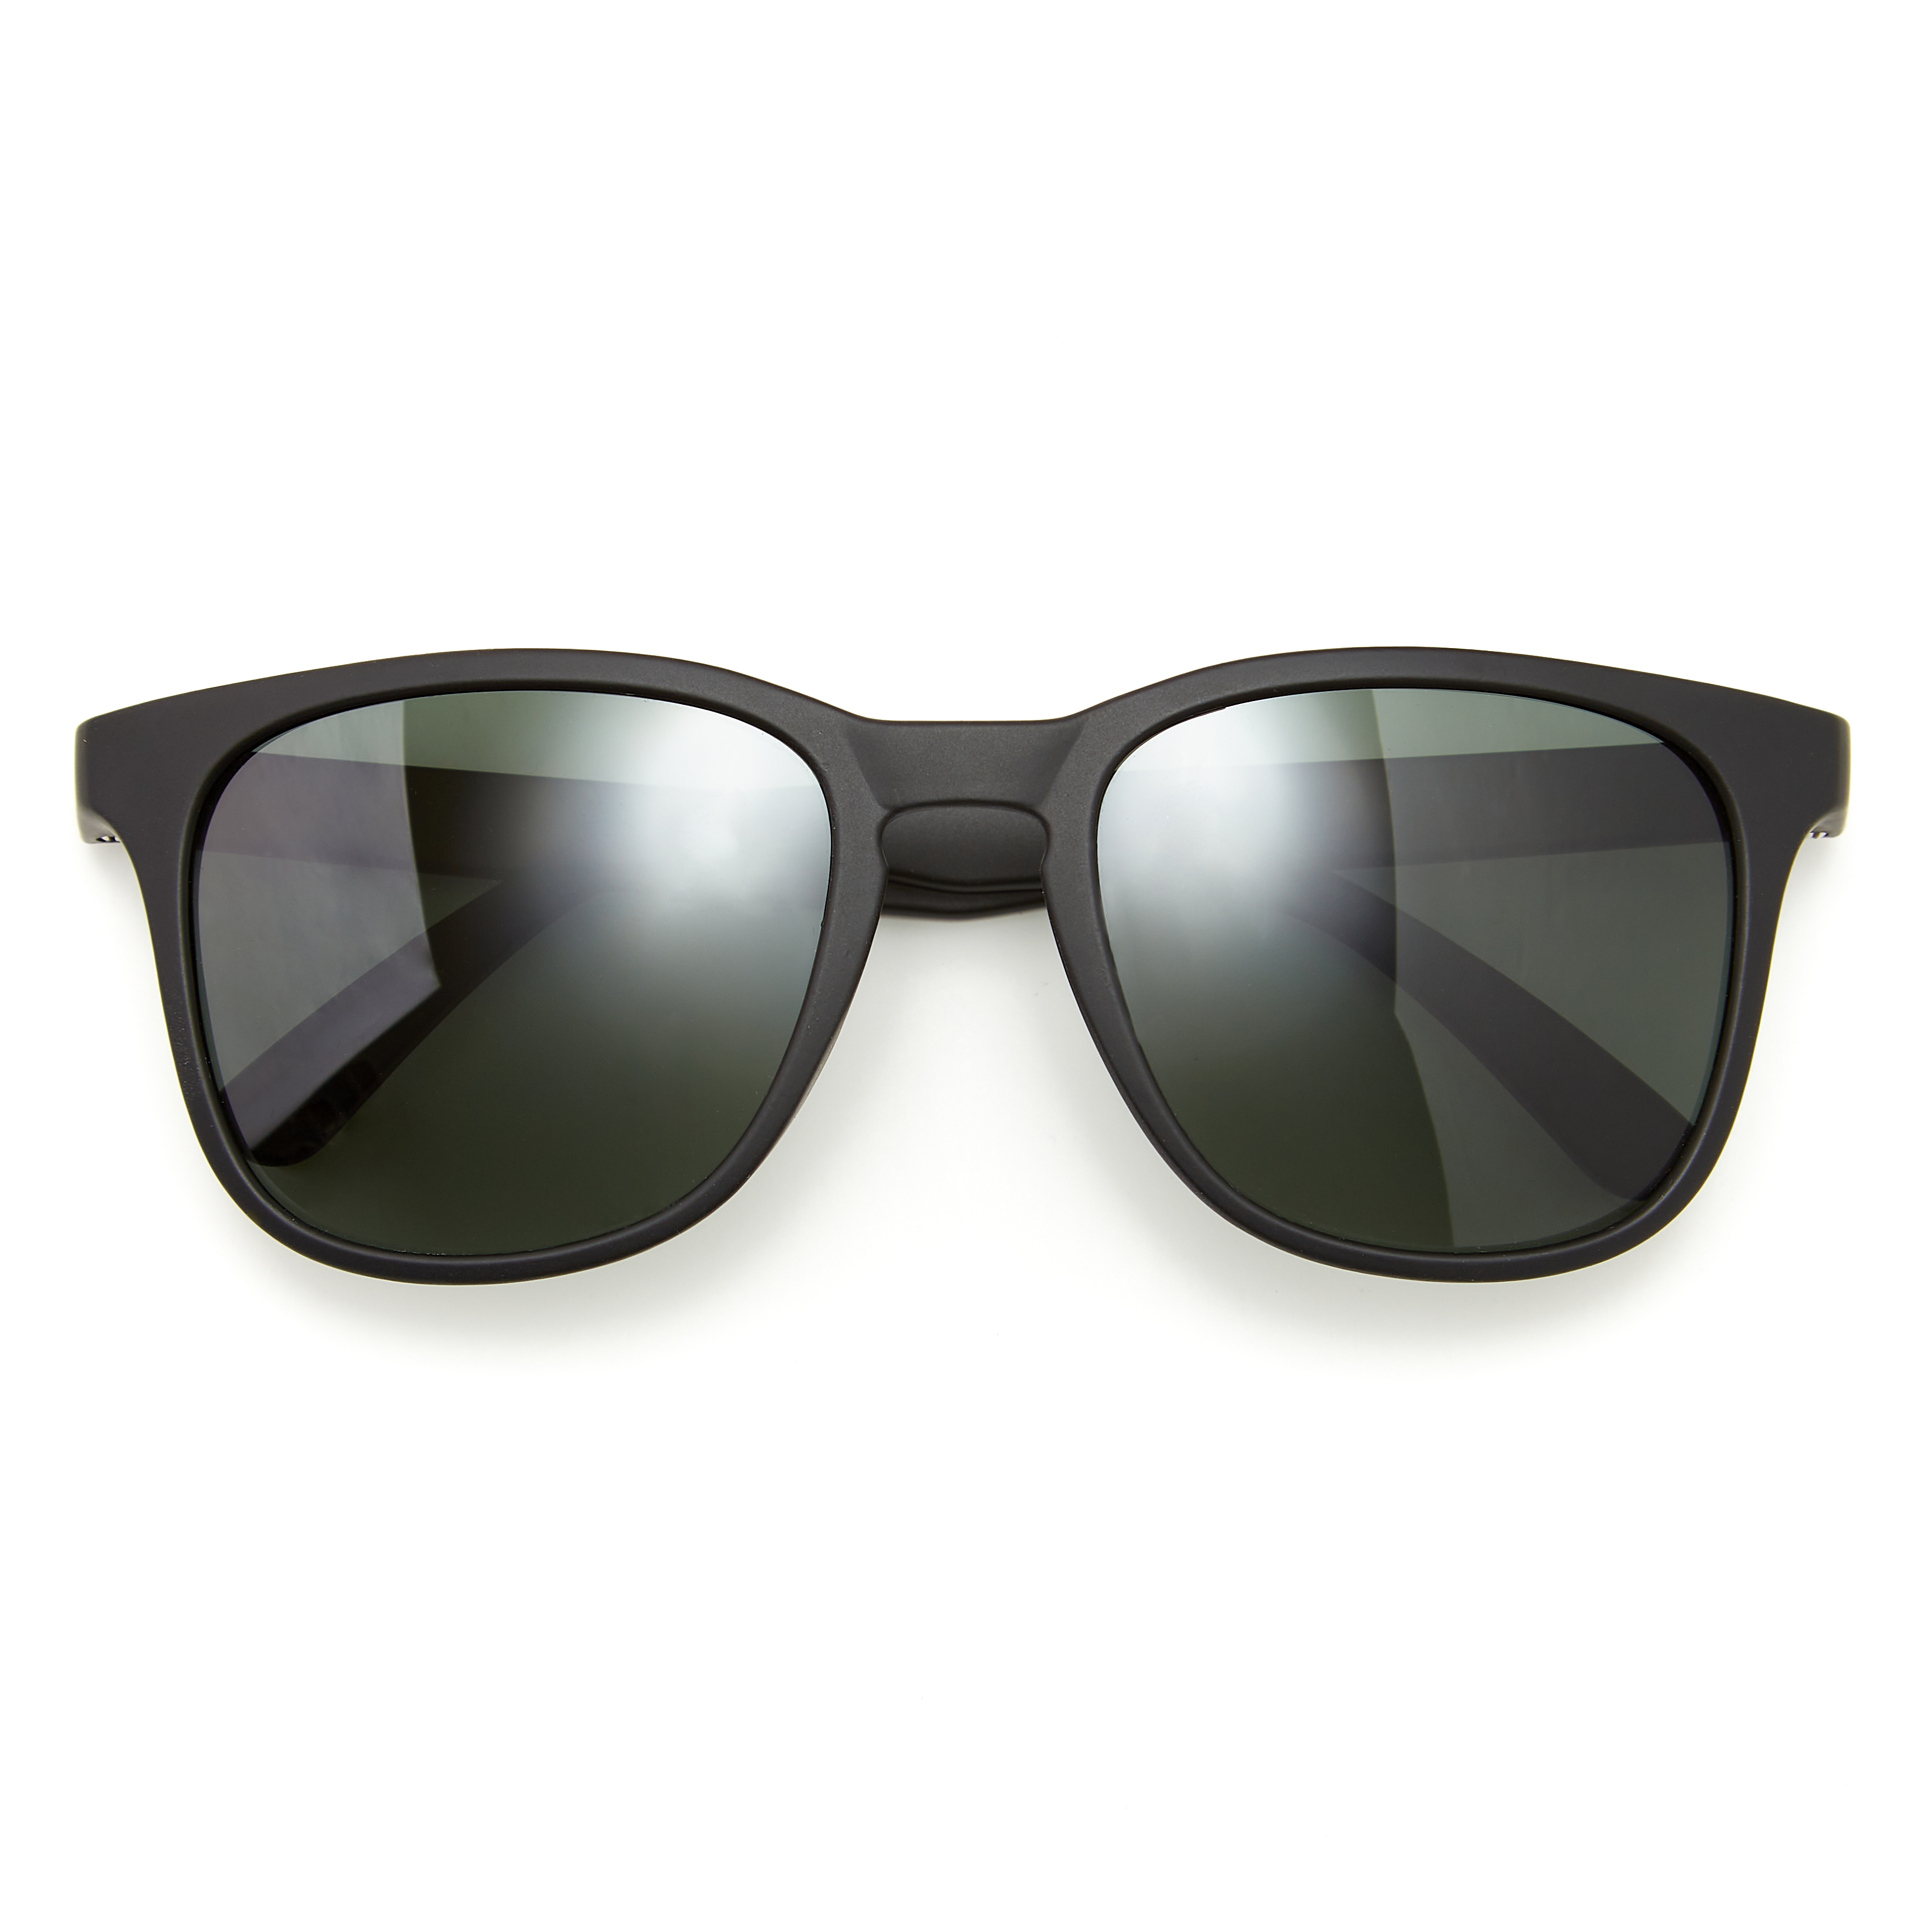 The Best Men's Sunglasses Looks For Summer  Best mens sunglasses, Mens  sunglasses, Sunglasses